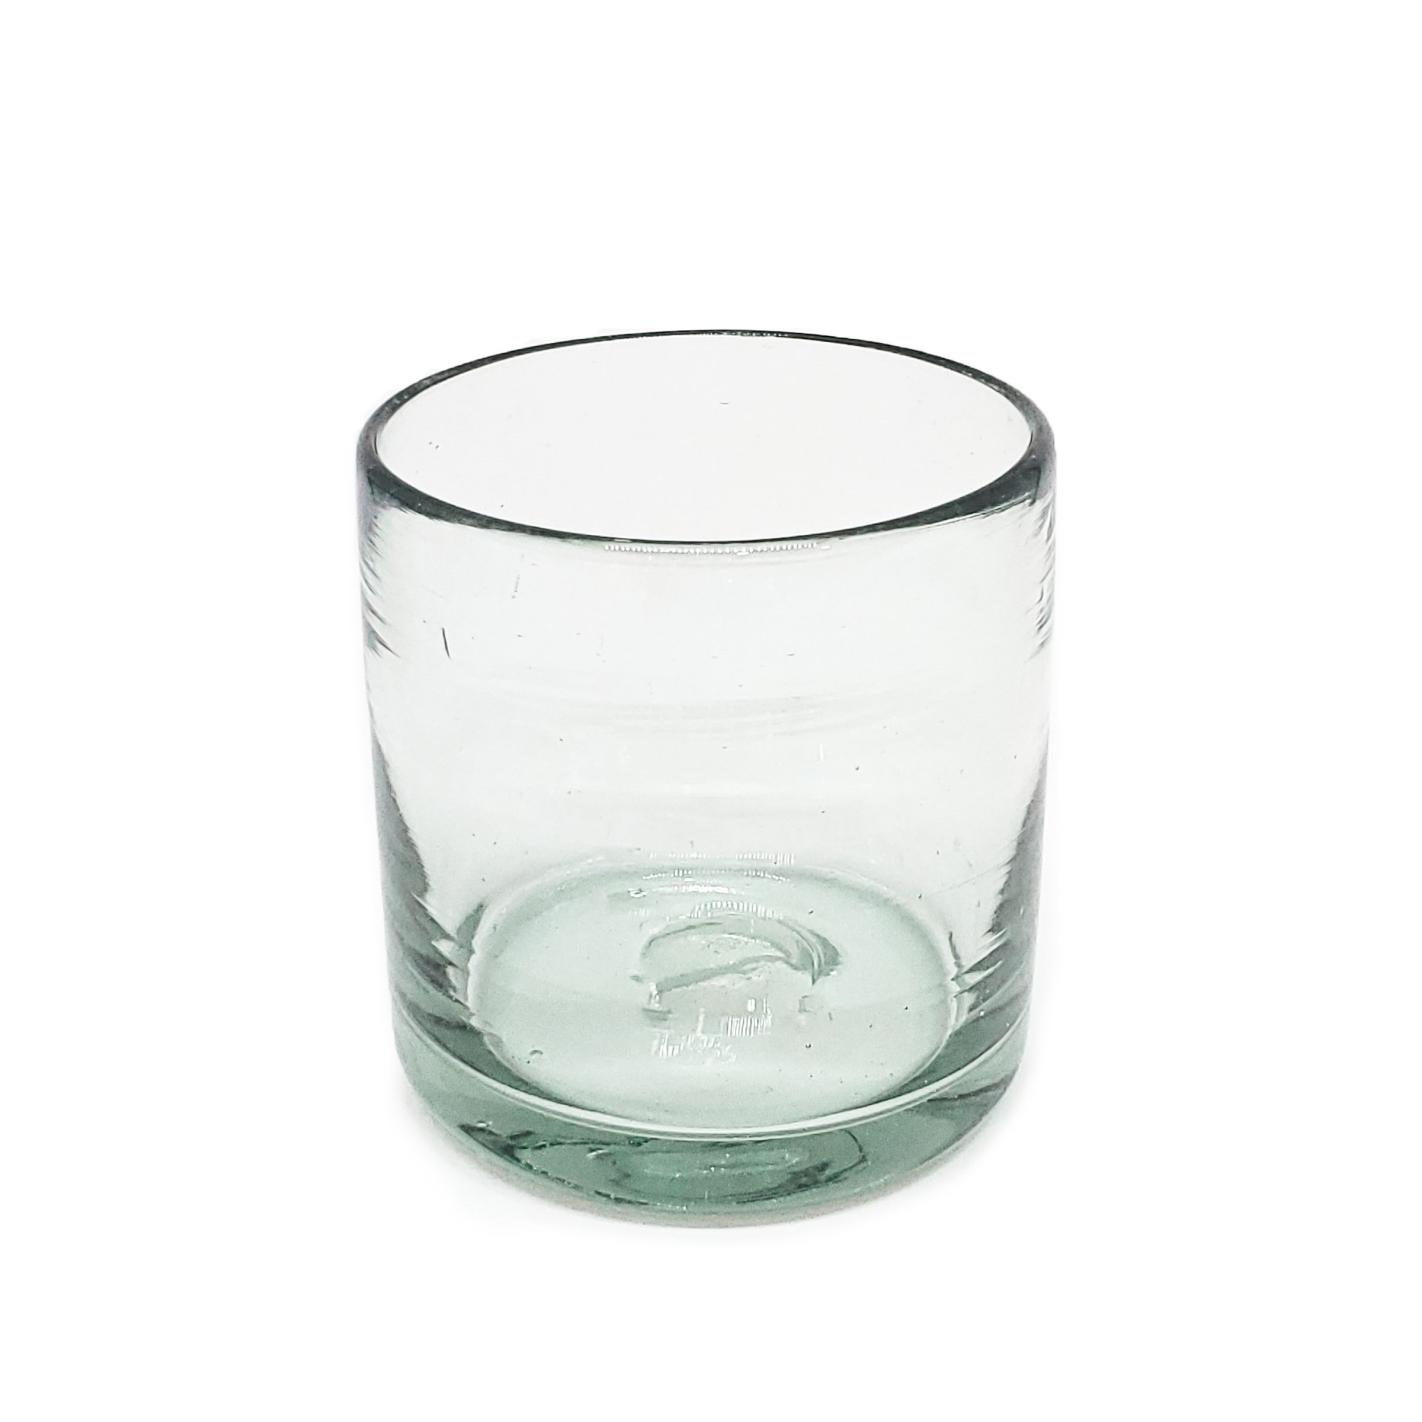 Ofertas / Juego de 6 vasos DOF 8oz Transparentes / Éstos artesanales vasos le darán un toque clásico a su bebida favorita.